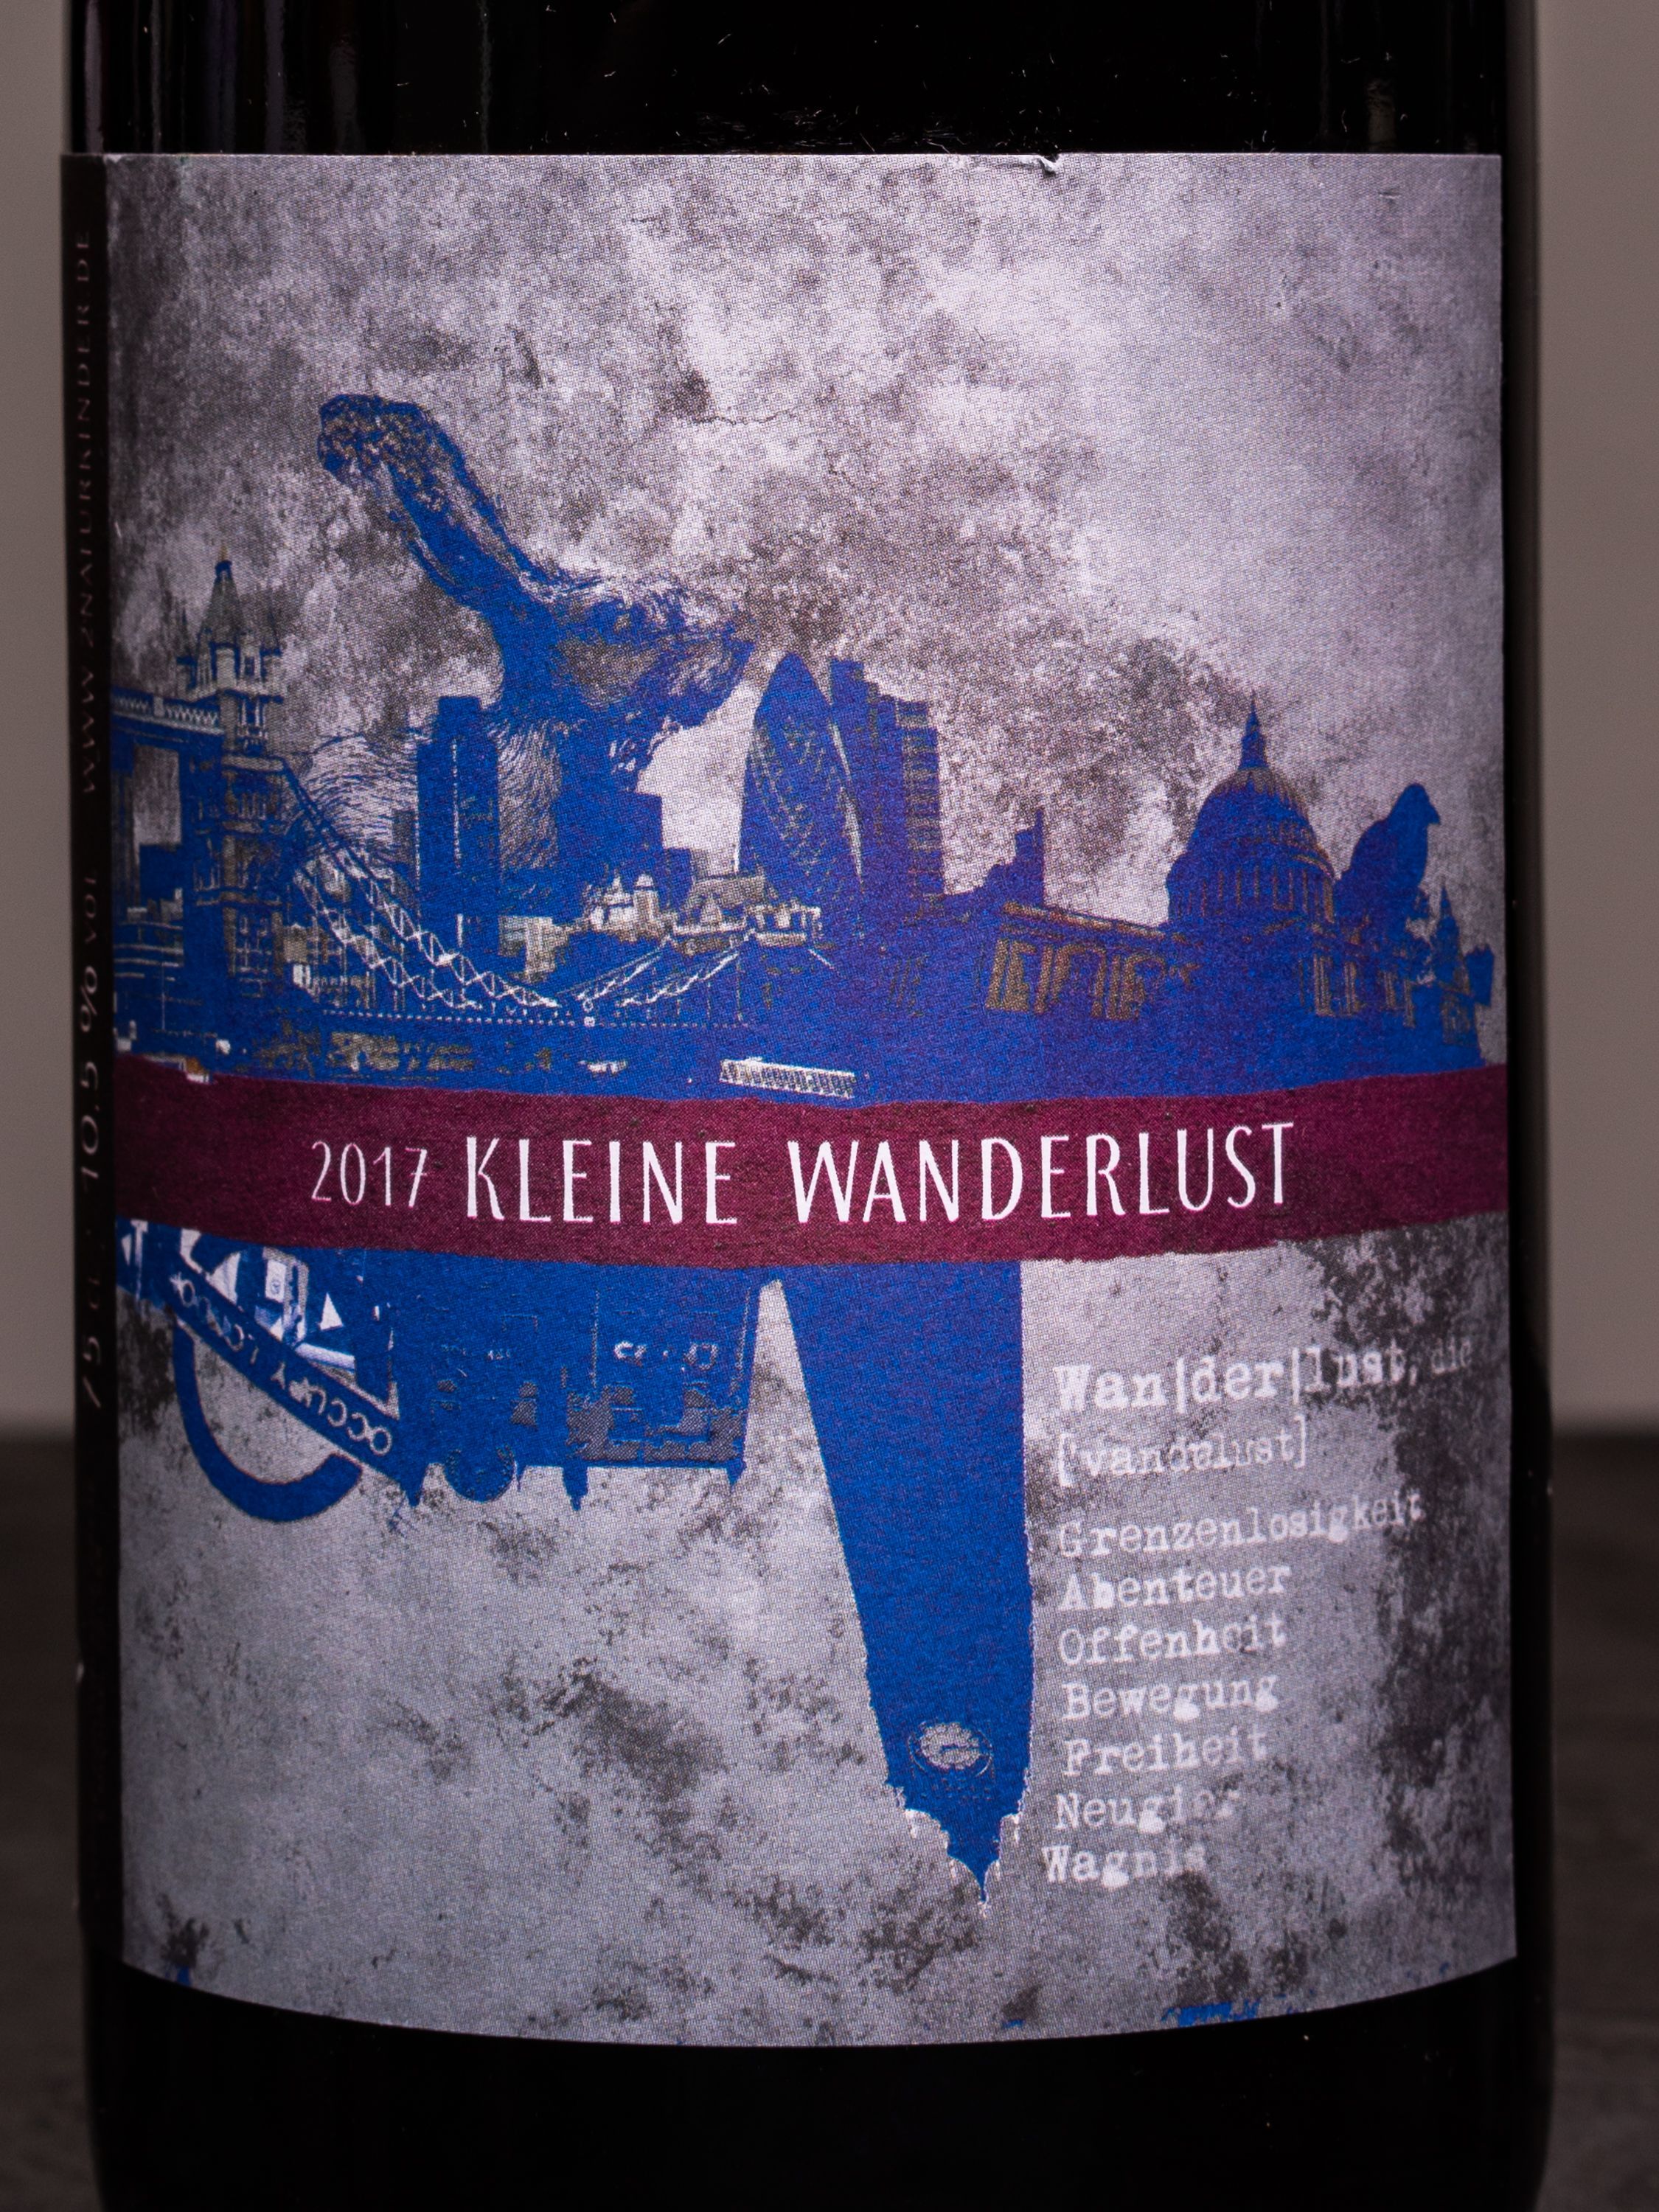 Вино 2Naturkinder Kleine Wanderlust / Кляйне Вандерлуст